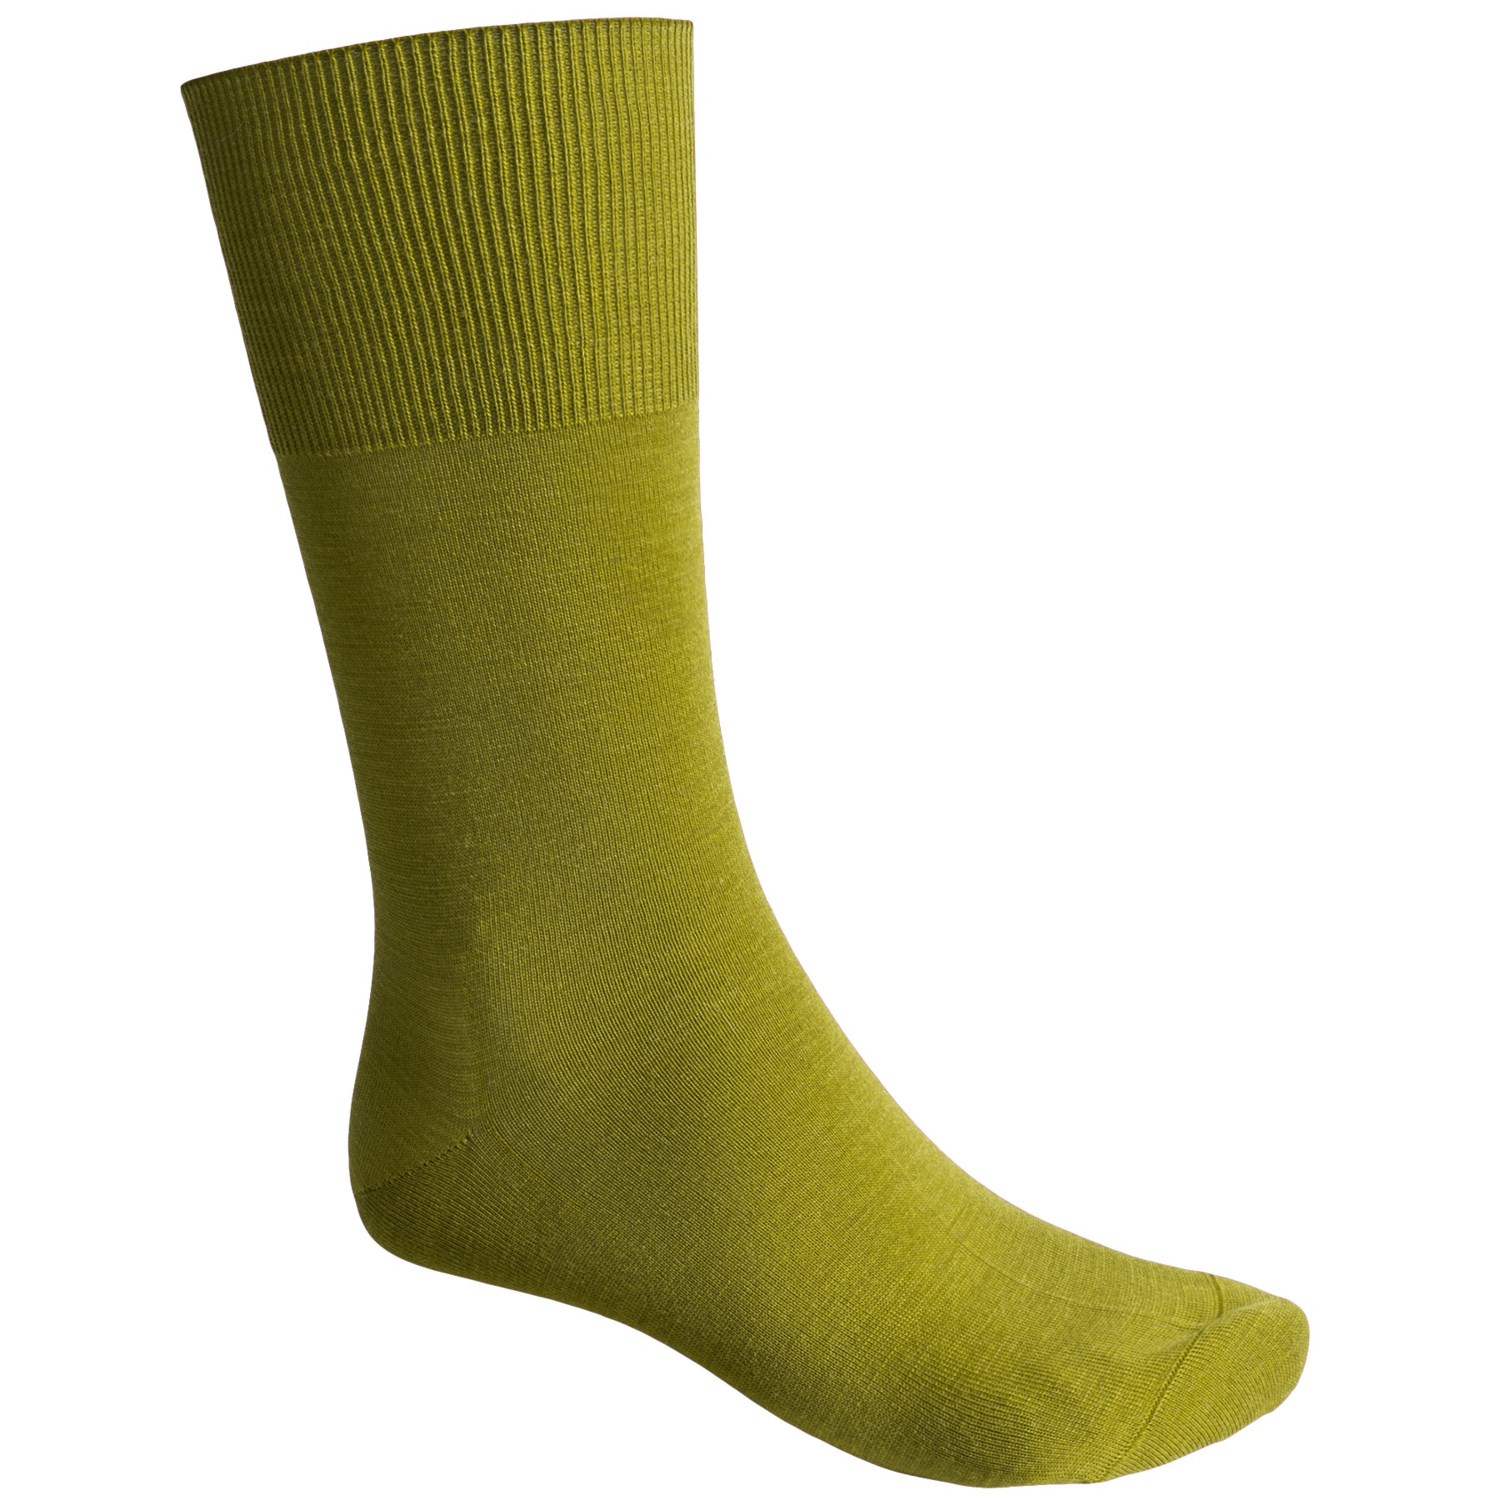 Falke Airport Socks (For Men) 3760J - Save 68%